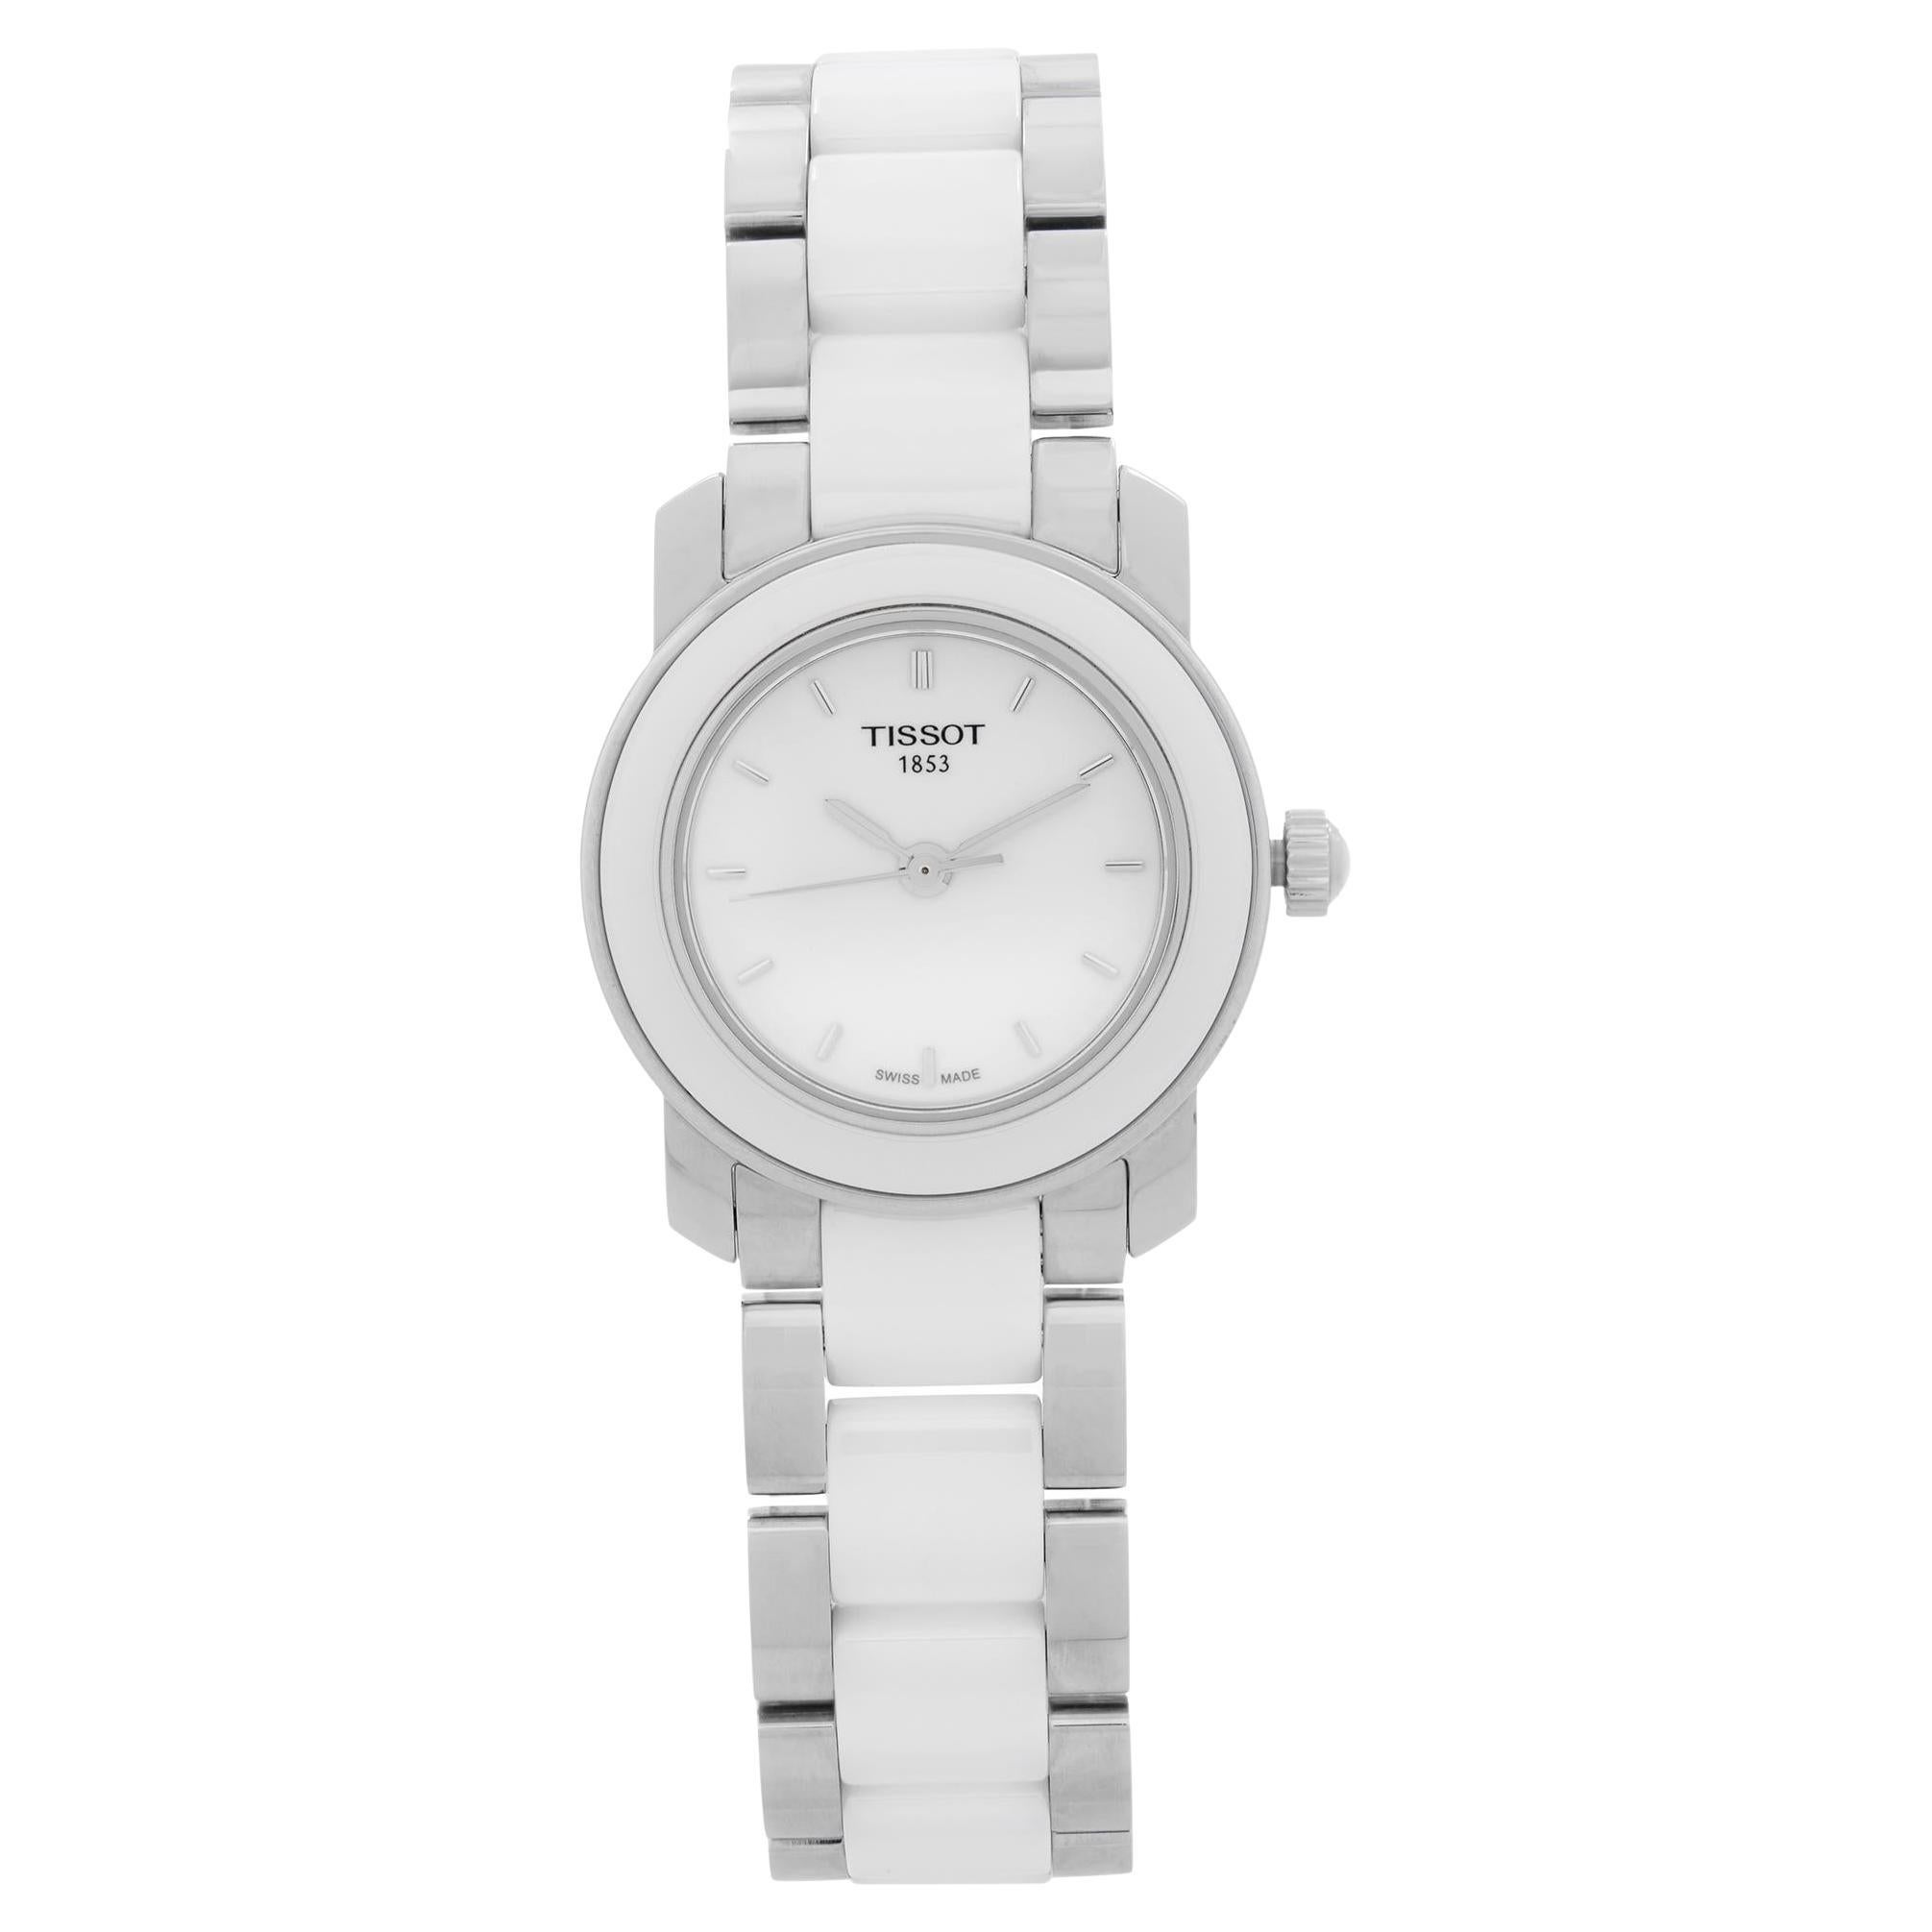 Tissot T-Trend Steel Ceramic White Quartz Ladies Watch T064.210.22.011.00